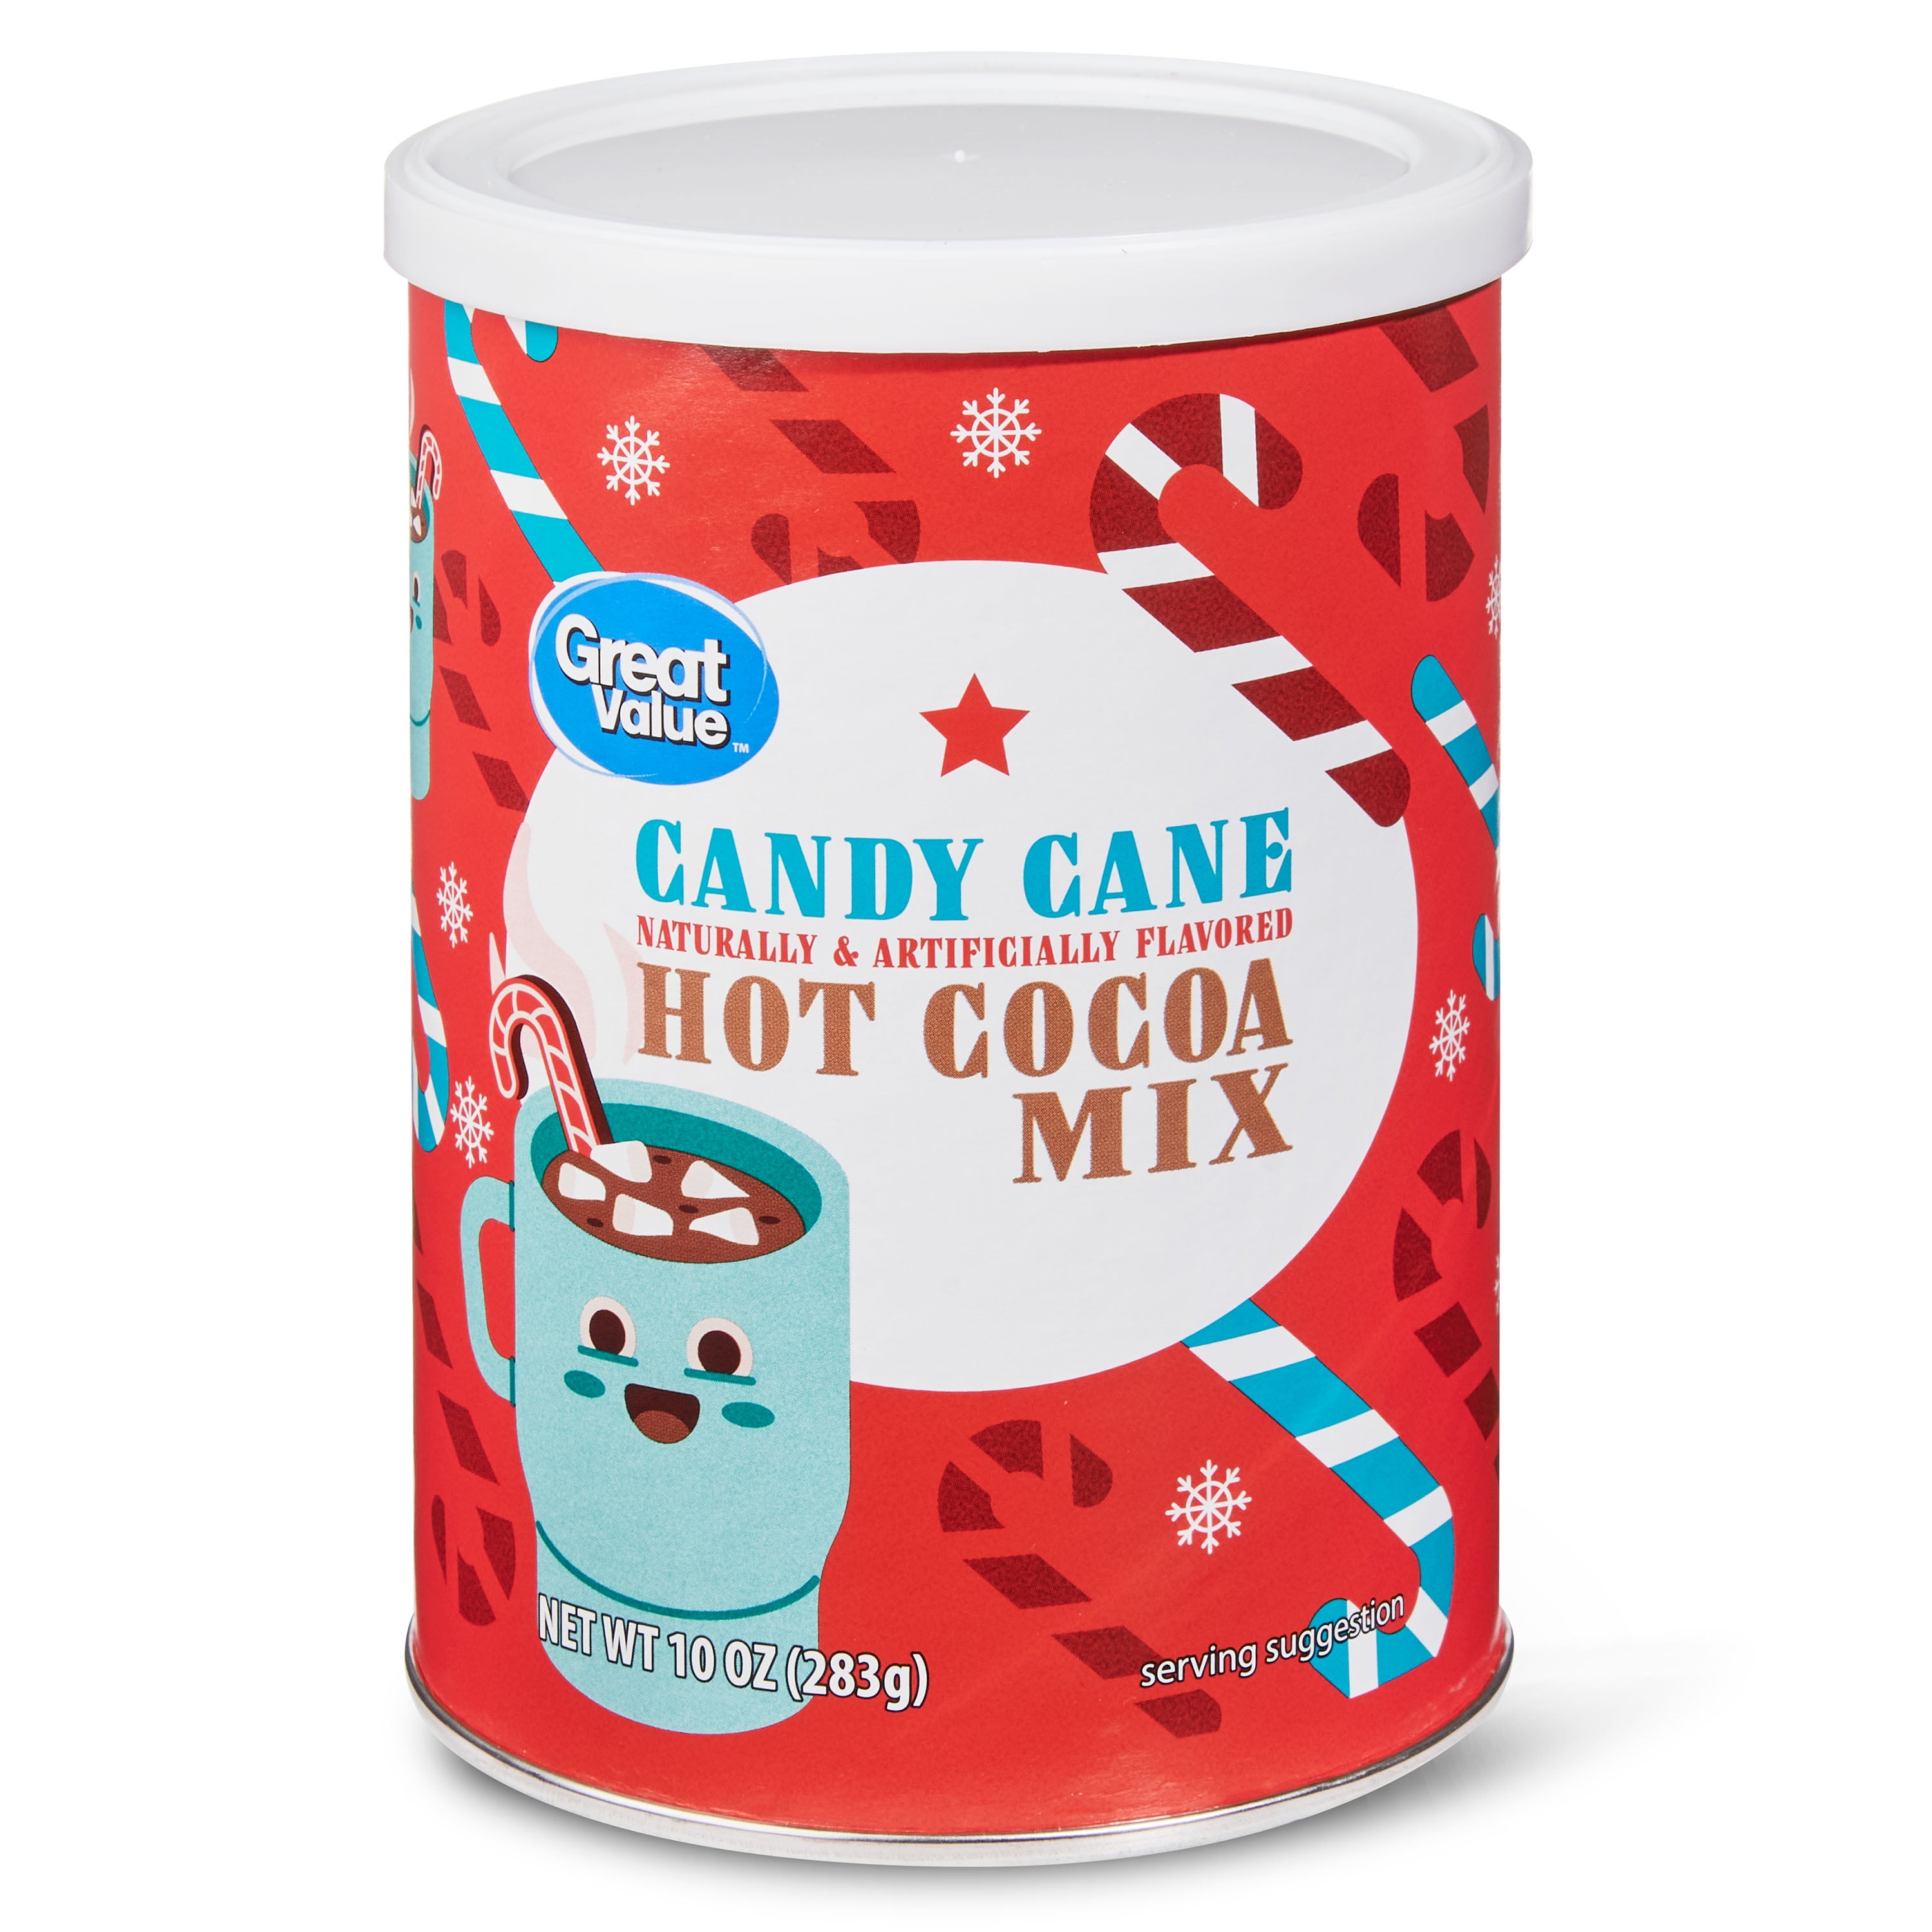 Great Value Candy Cane Hot Cocoa Mix, 10 oz - Walmart.com - Walmart.com